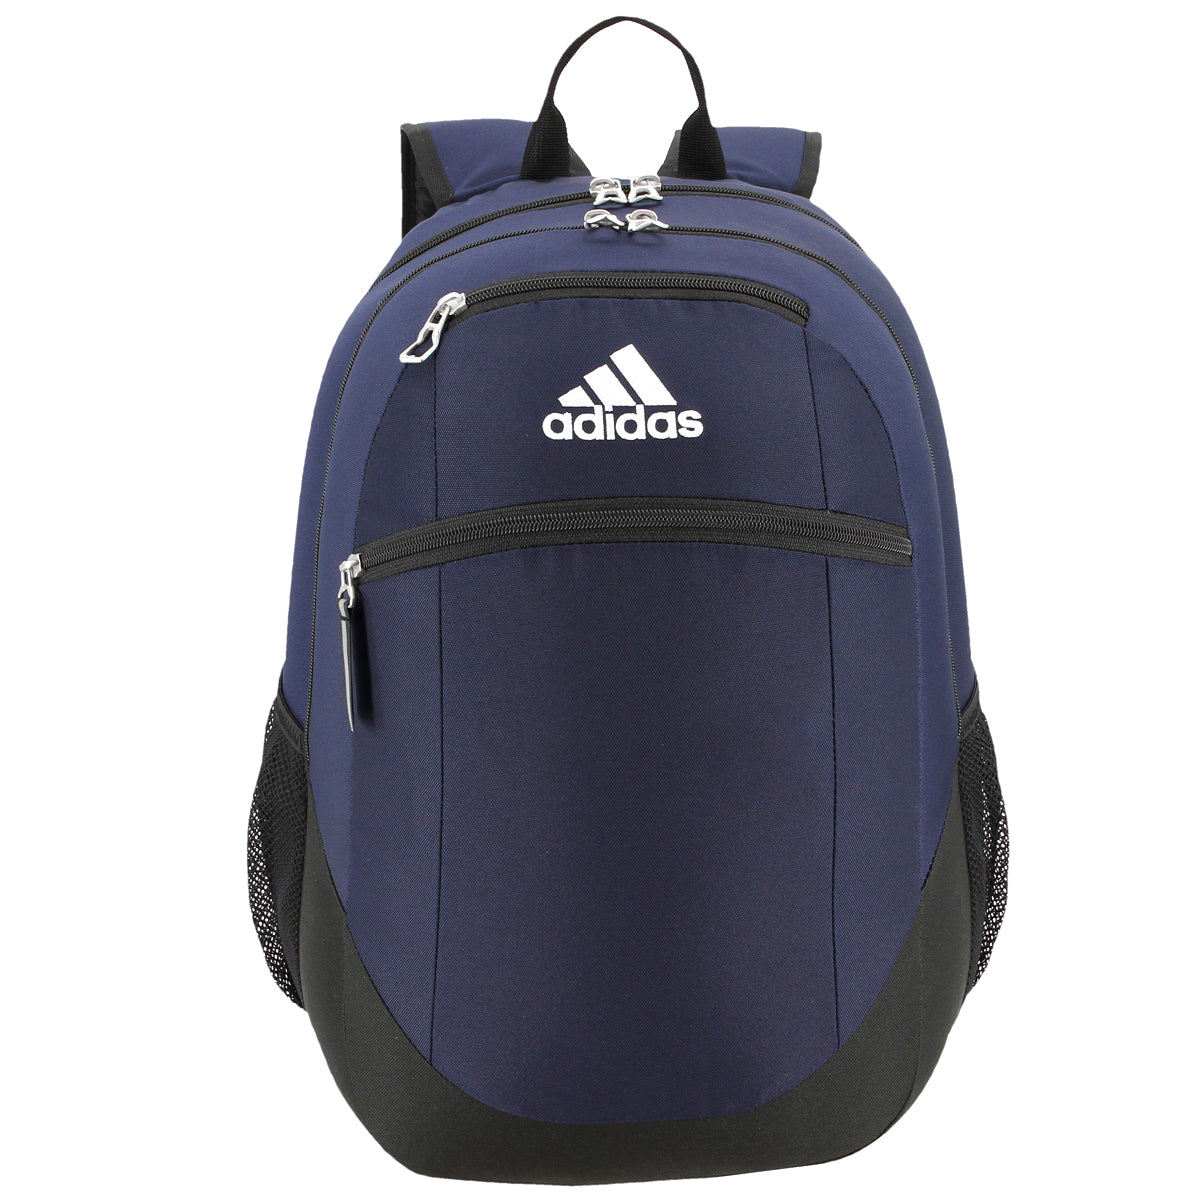 adidas Striker II Team Backpack Bags Adidas One Size Collegiate Navy 